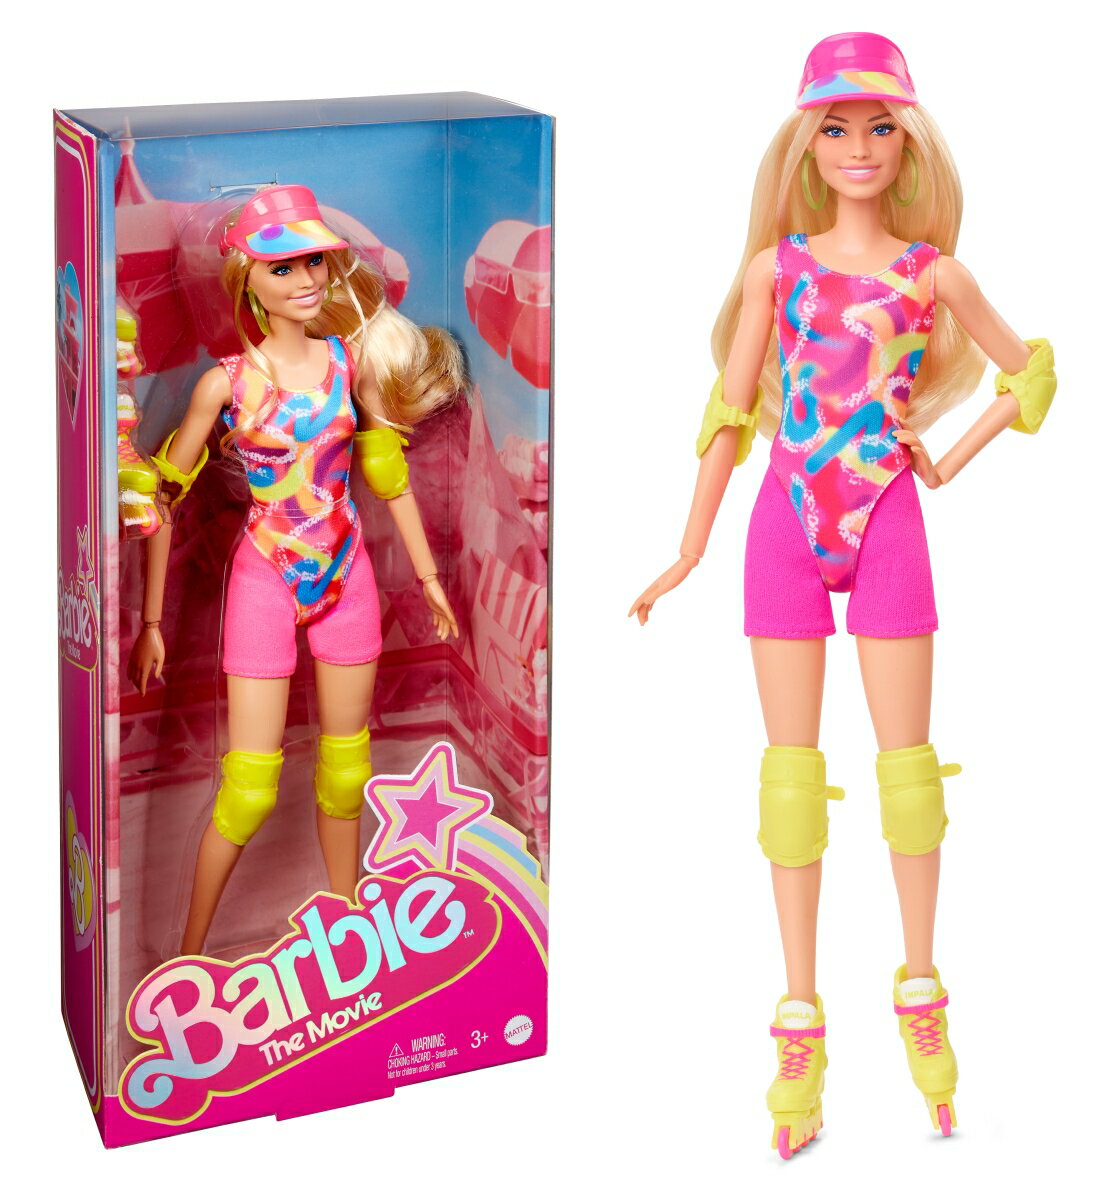 バービー(Barbie) 映画「バービー」 スケーティングファッション 【着せ替え人形・ドール】 【3才~】 HRB04